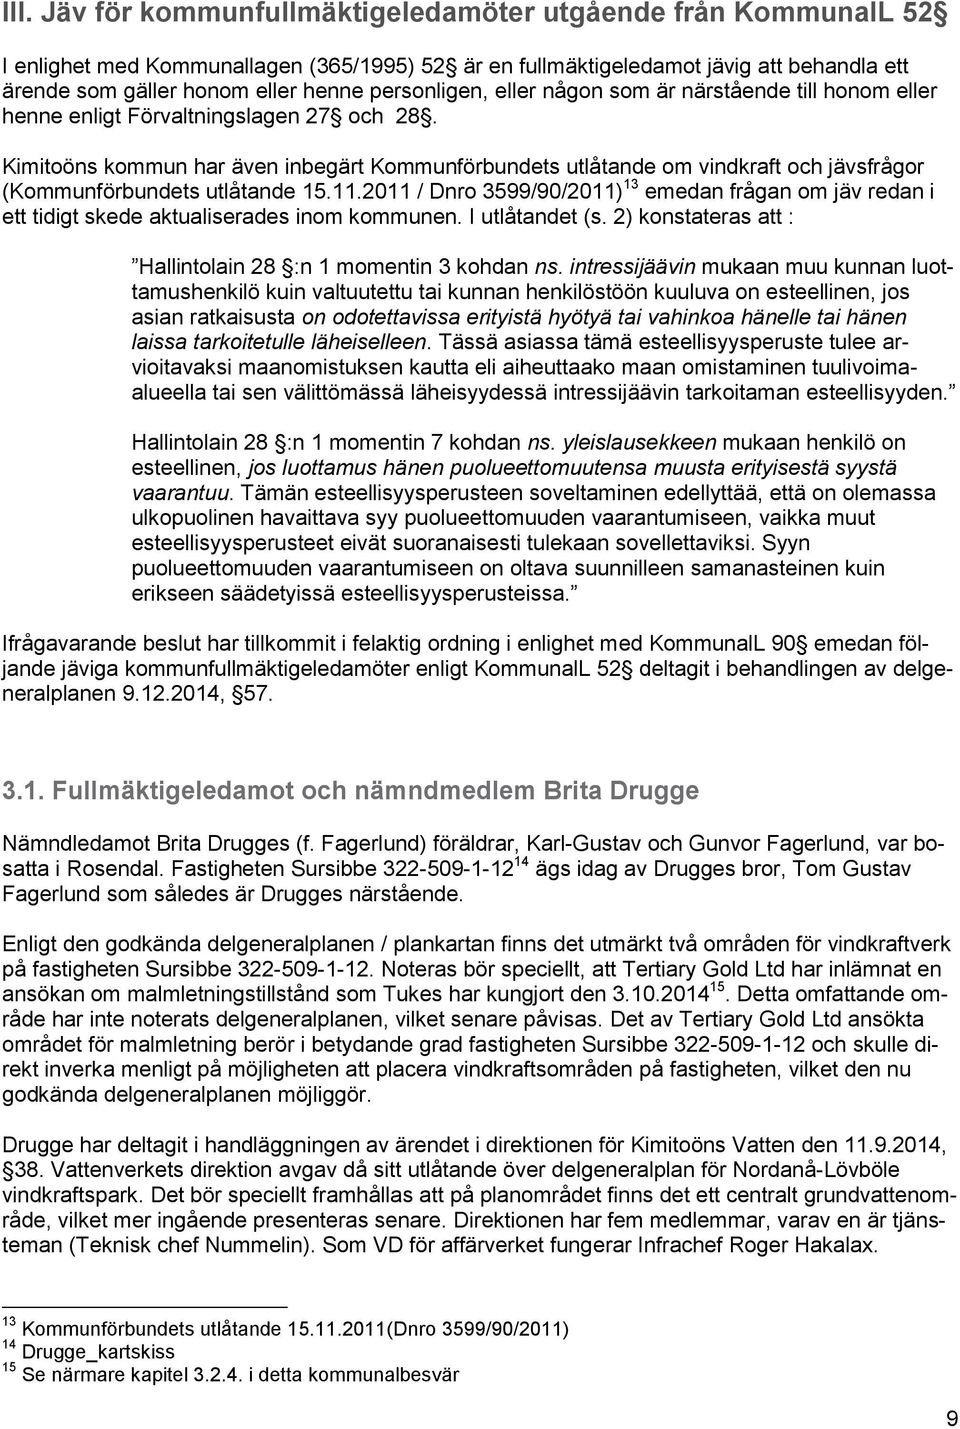 Kimitoöns kommun har även inbegärt Kommunförbundets utlåtande om vindkraft och jävsfrågor (Kommunförbundets utlåtande 15.11.